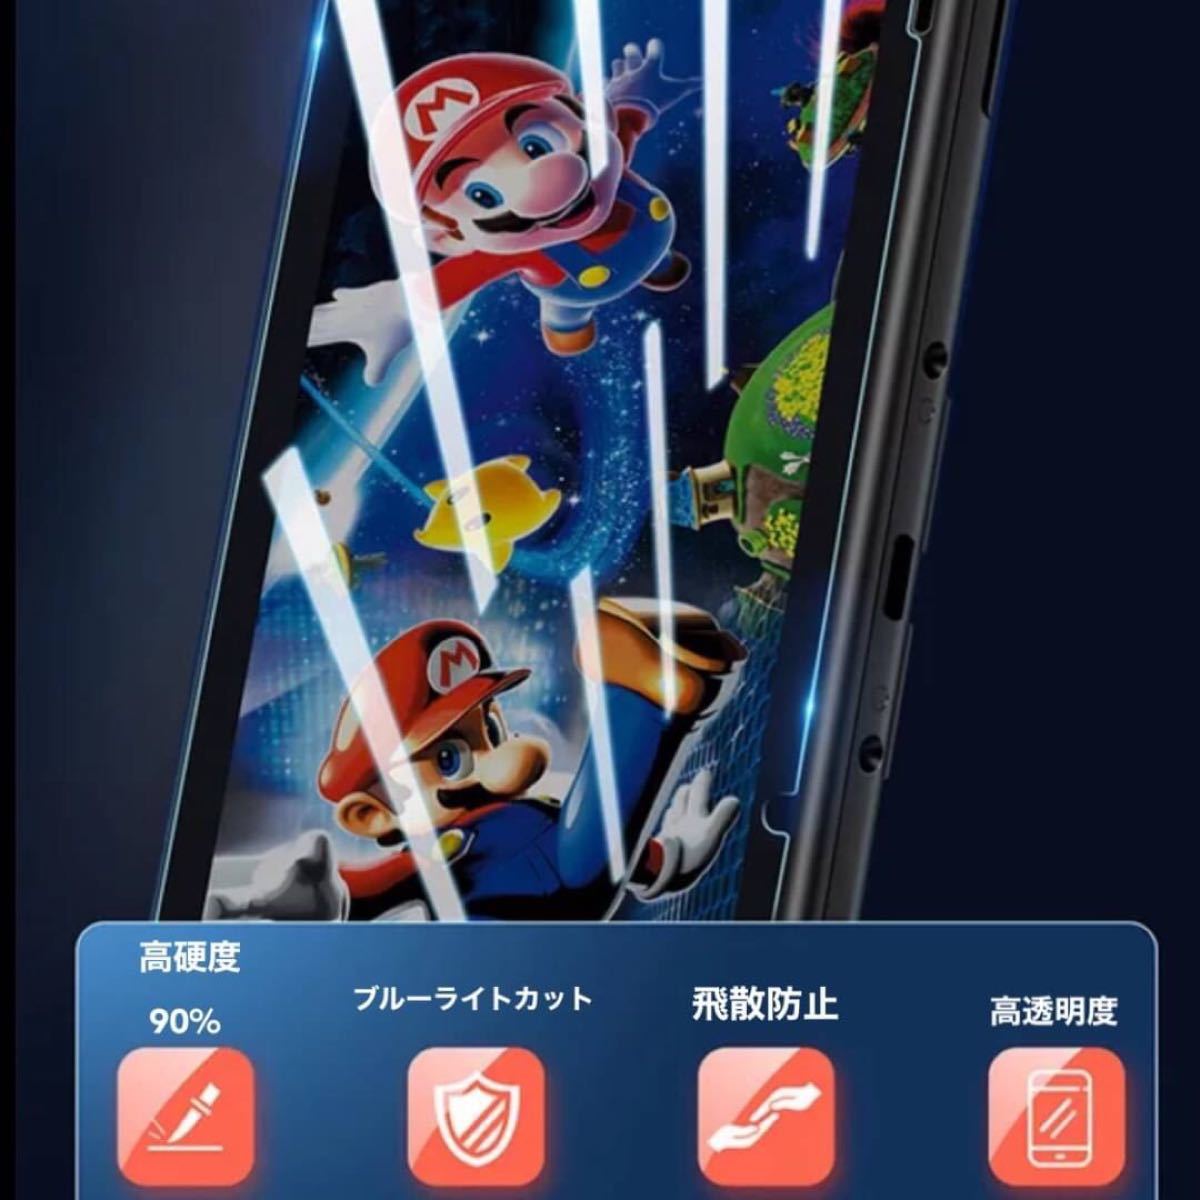 任天堂スイッチ ガラスフィルム Nintendo Switch 保護フィルム ブルーライトカット 液晶 保護 Switch 新品